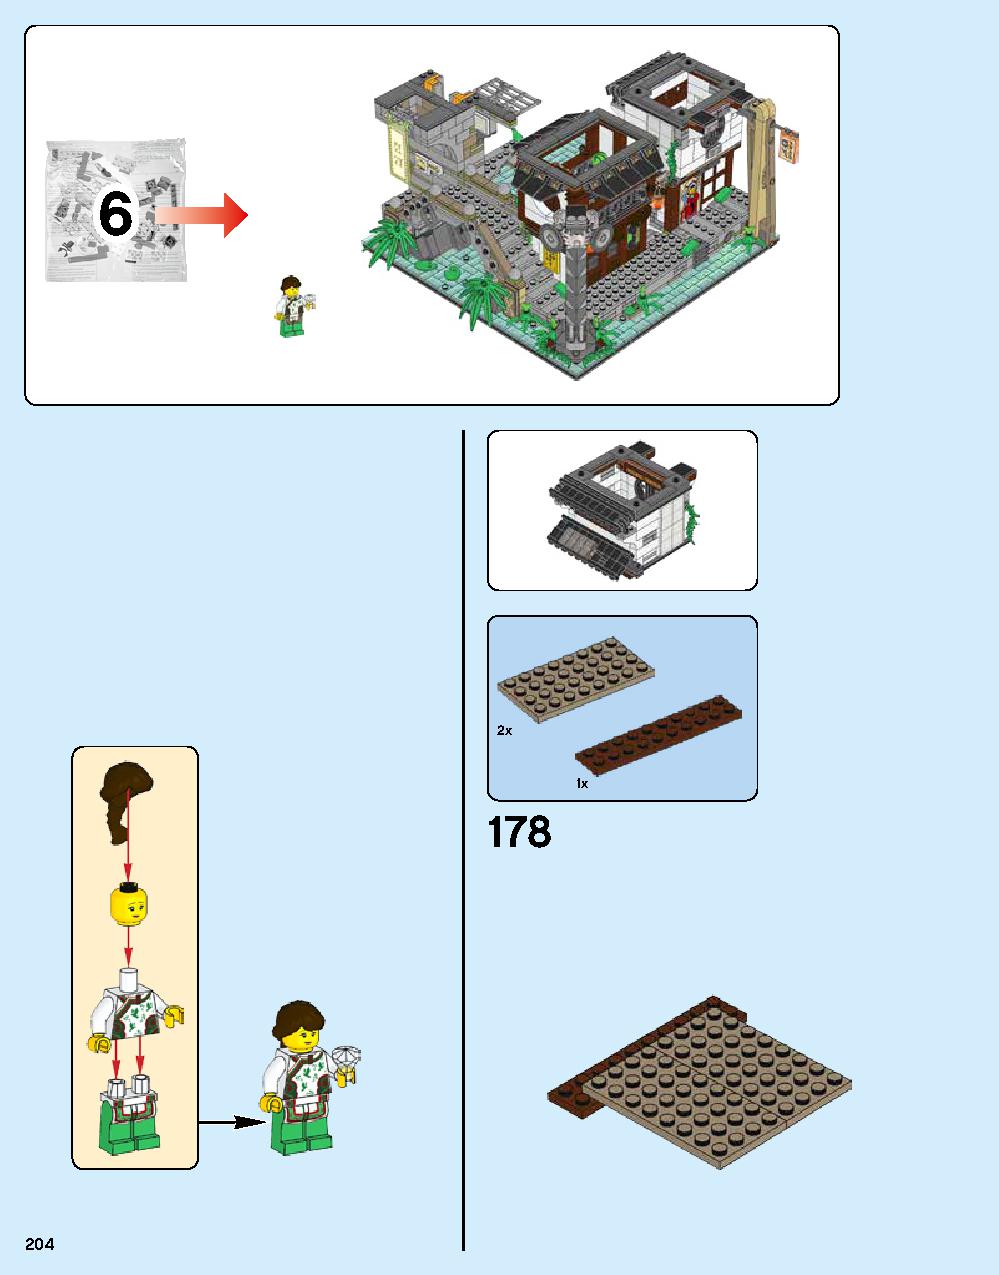 ニンジャゴー シティ 70620 レゴの商品情報 レゴの説明書・組立方法 204 page